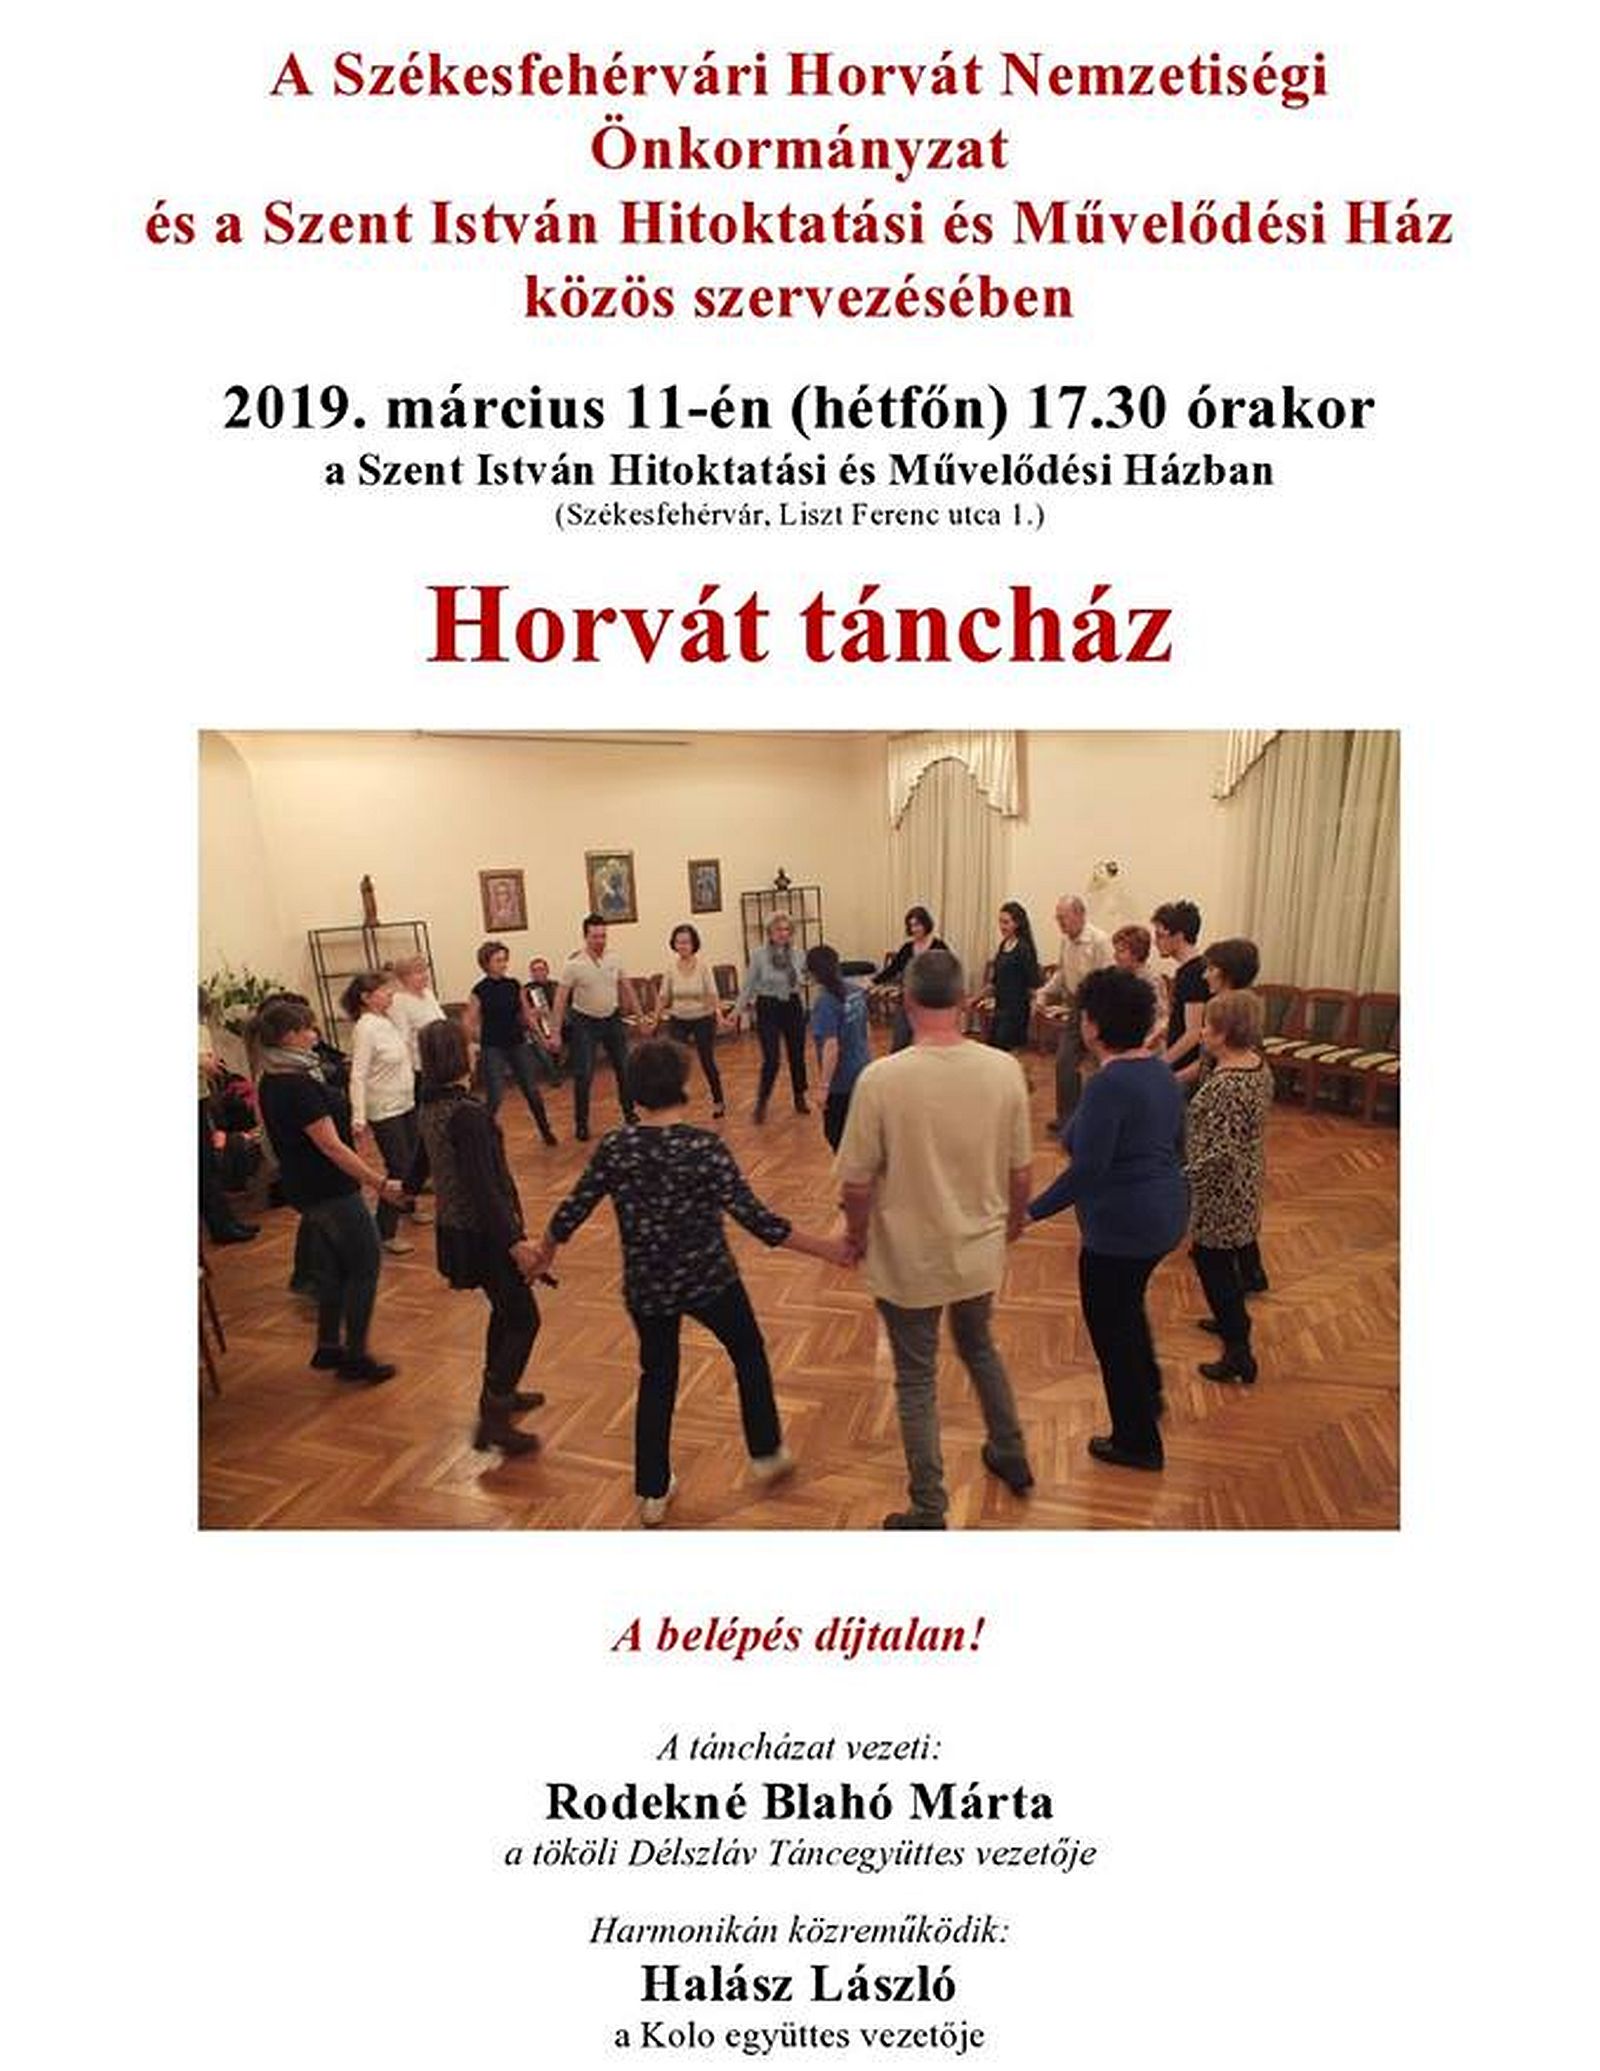 Horvát táncház lesz hétfőn a Szent István Művelődési Házban